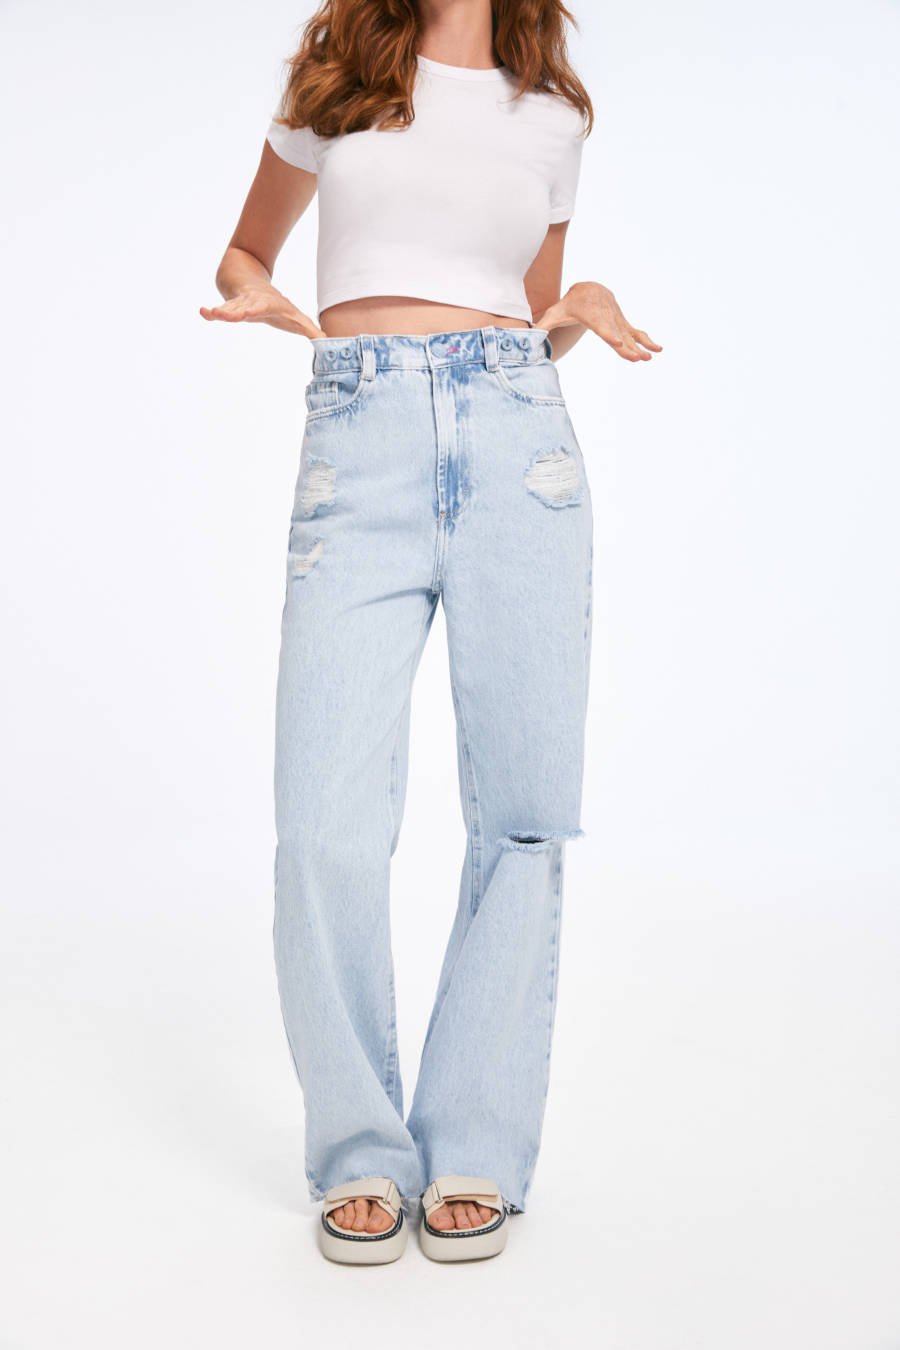 Imagem de mulher mostrando calça jeans wide leg, compondo com um cropped branco simples